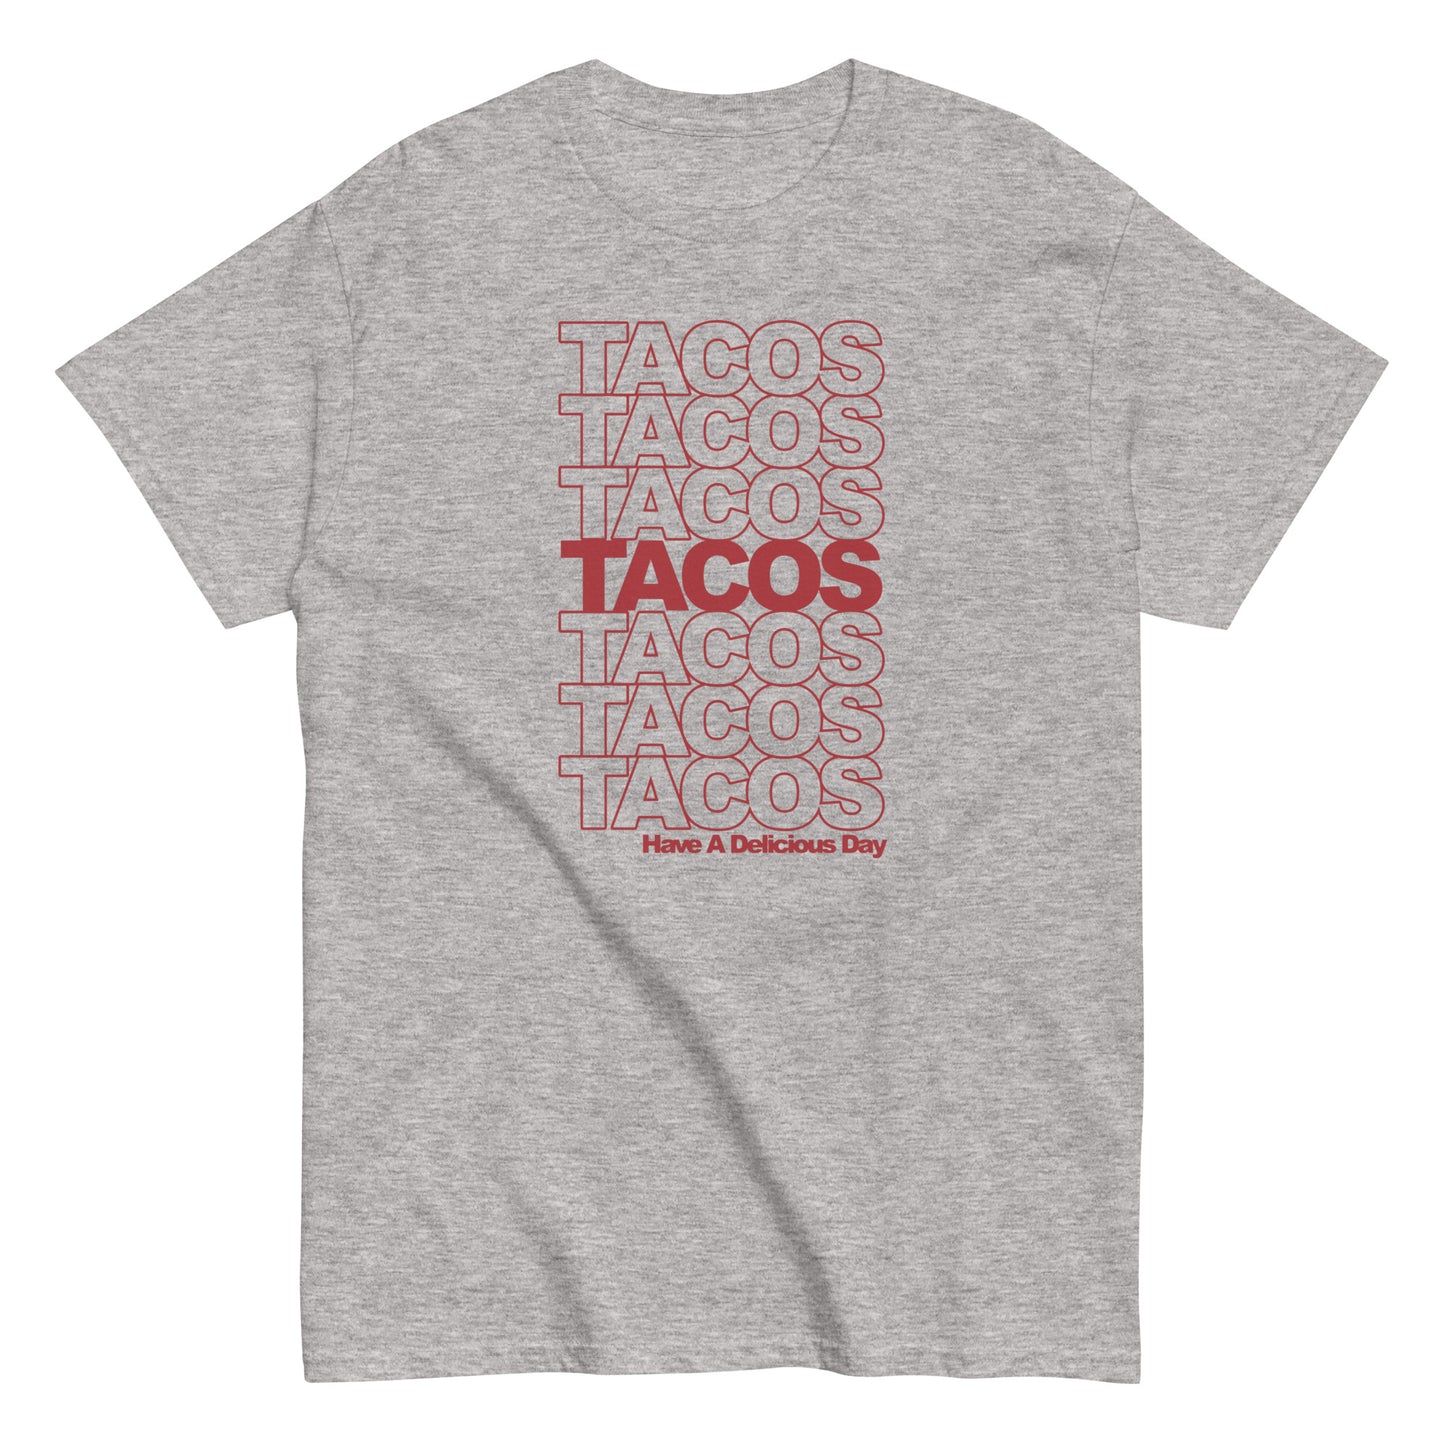 Tacos Tacos Tacos Men's Classic Tee